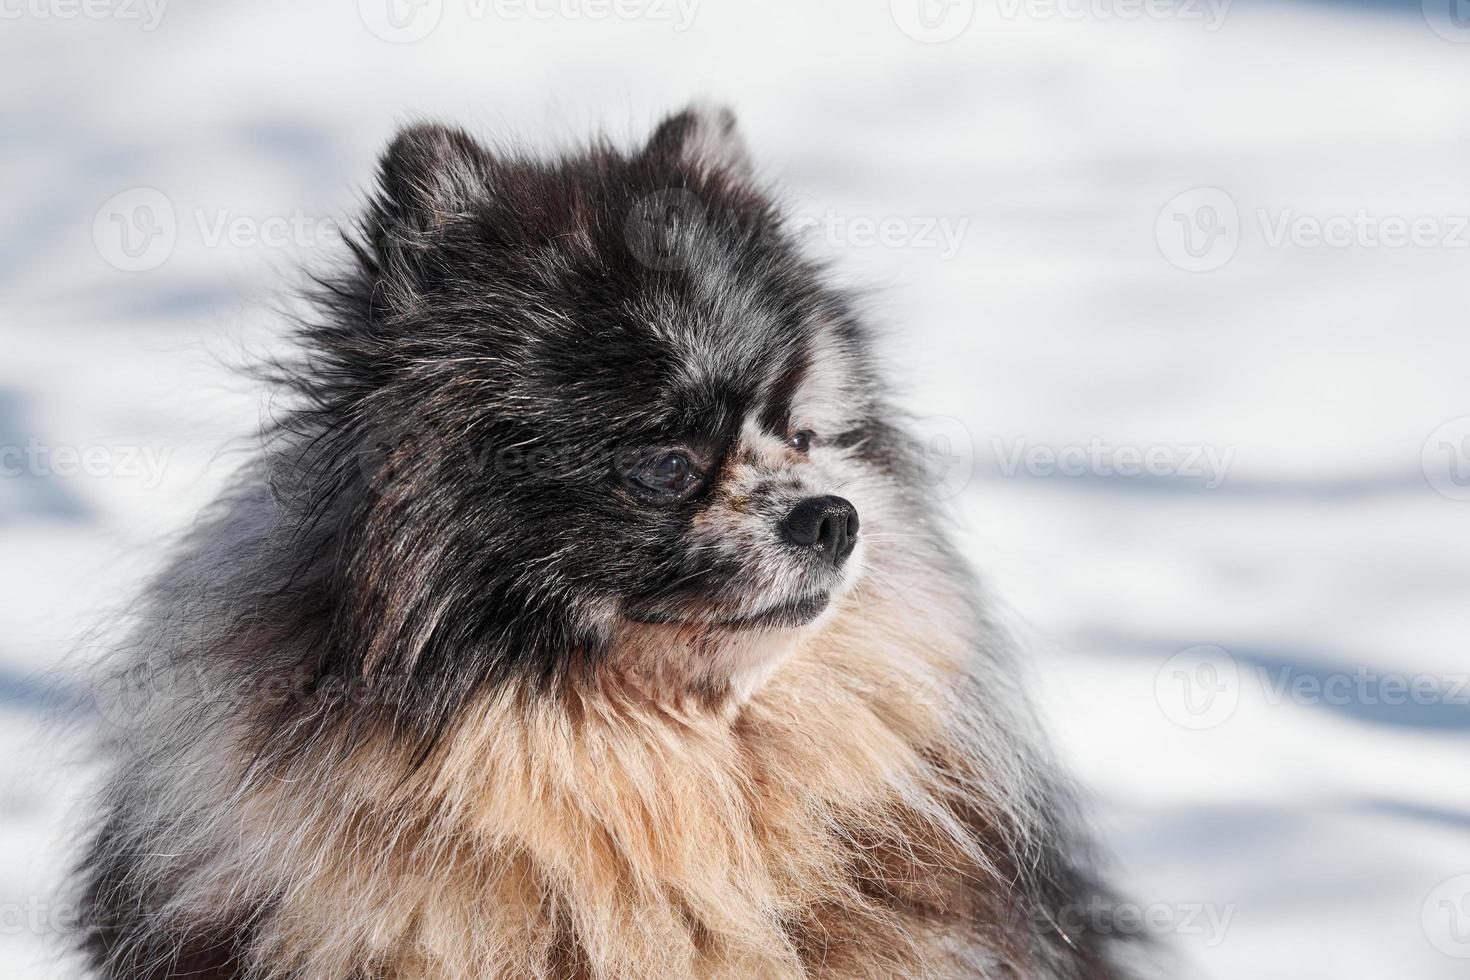 retrato de cierre de perro spitz pomeranian, lindo mármol negro con cachorro de spitz bronceado sentado en la nieve foto